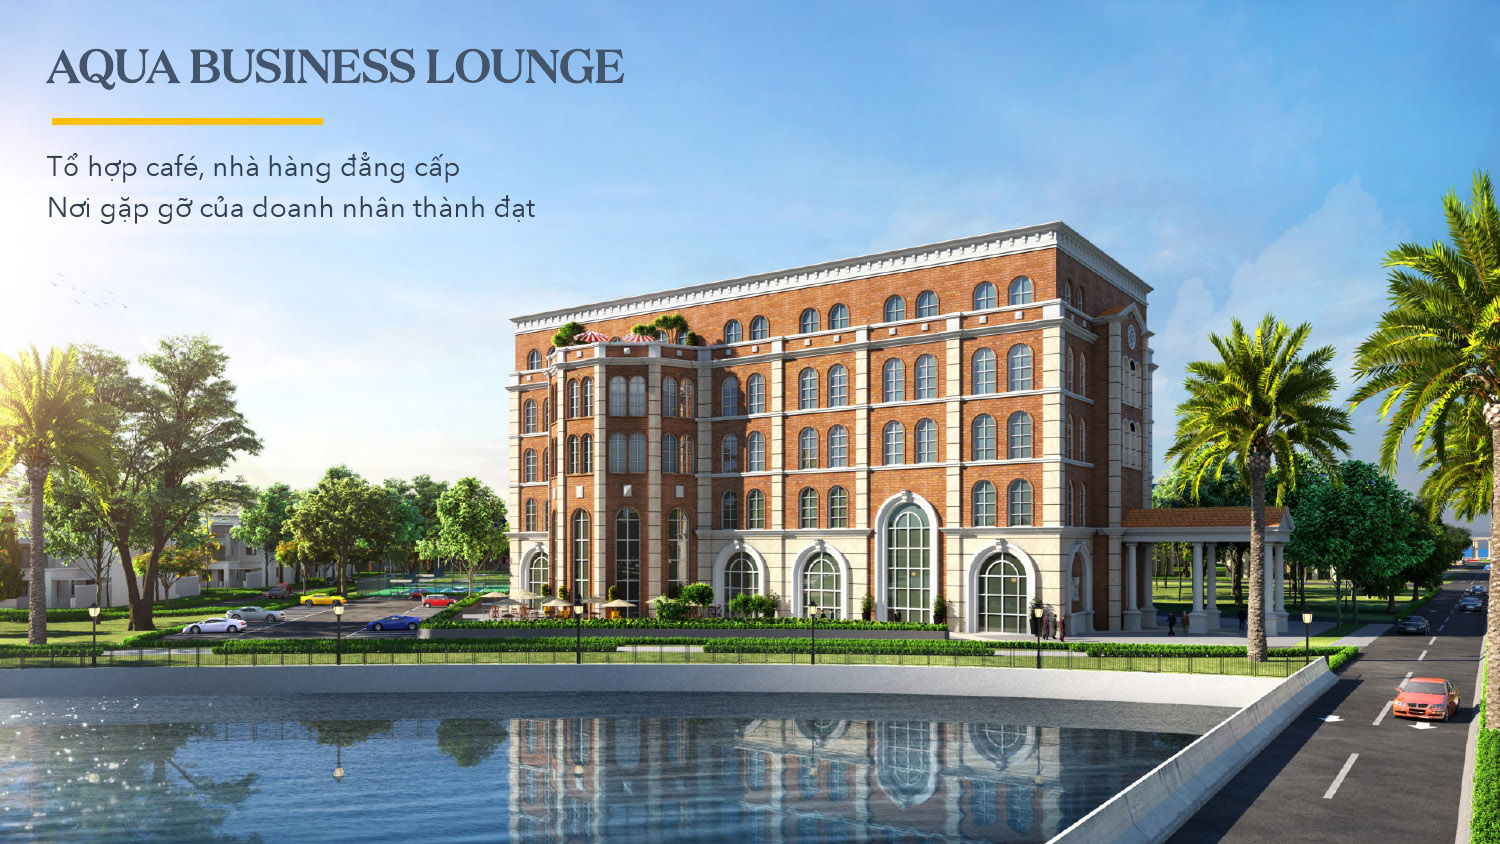 Aqua Business Lounge "điểm hẹn" của những doanh nhân thành đạt